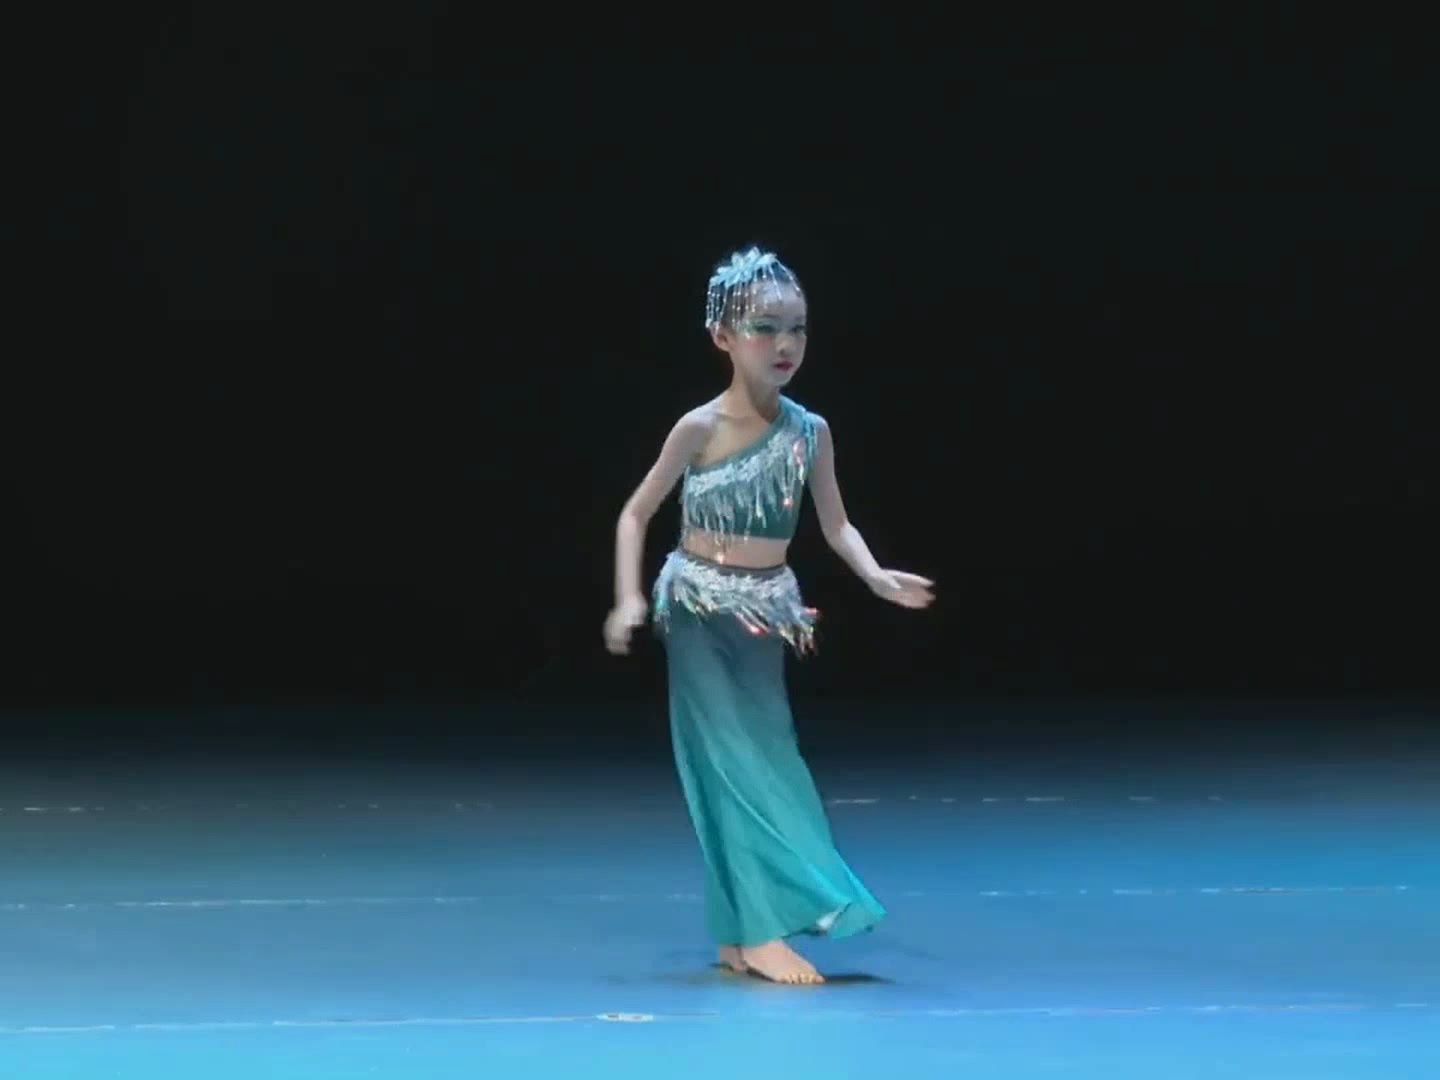 少儿傣族舞《小河弯弯》,小女孩一身青衣,光着小脚丫,舞姿优美动人